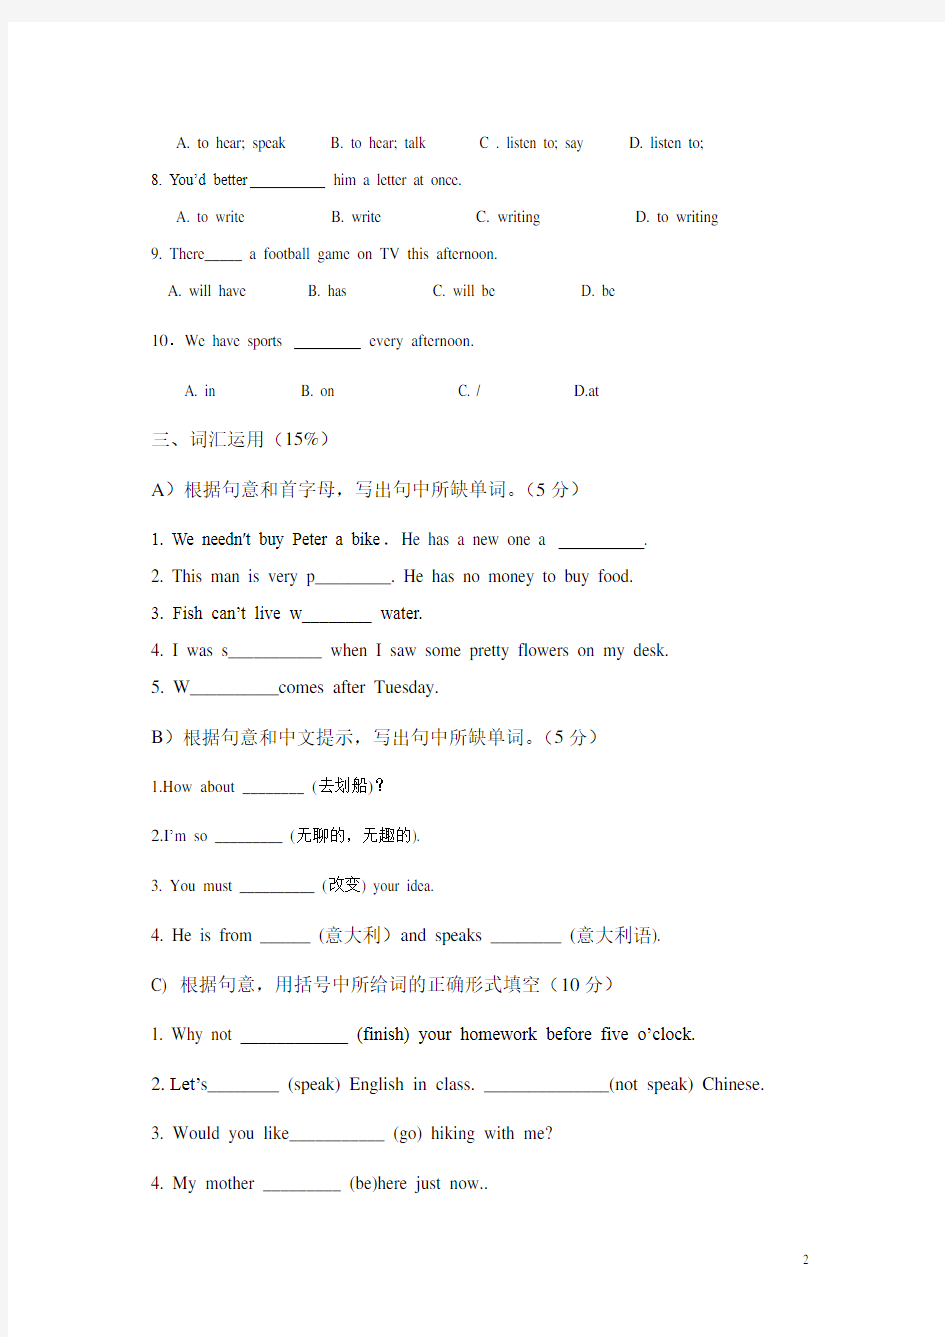 (完整版)广州小学六年级英语测试题